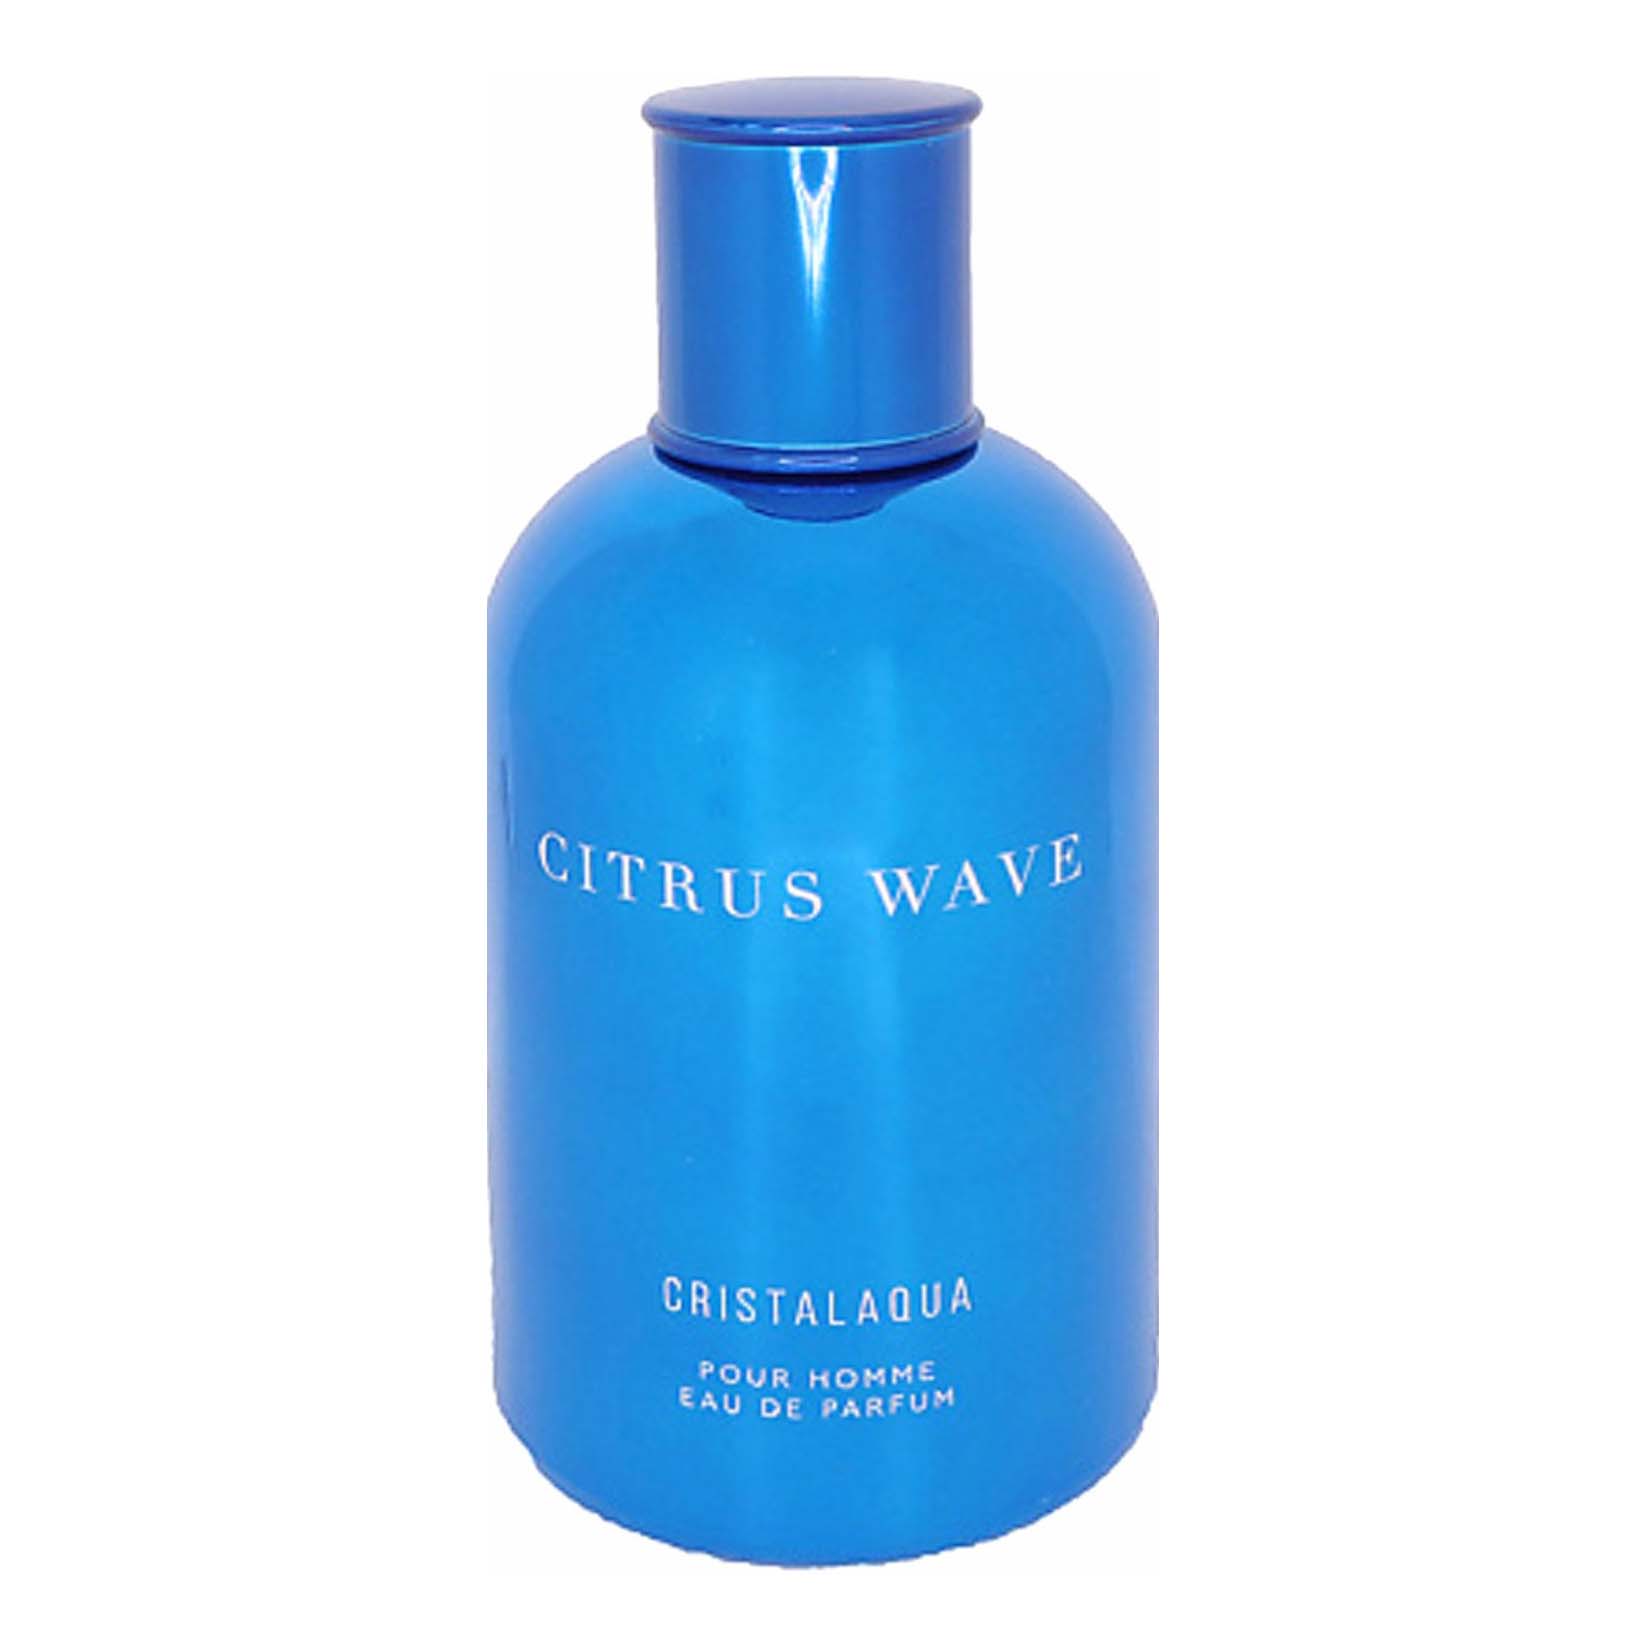 Парфюмерная вода Cristalaqua Citrus wave мужская 100 мл мужская жизнь